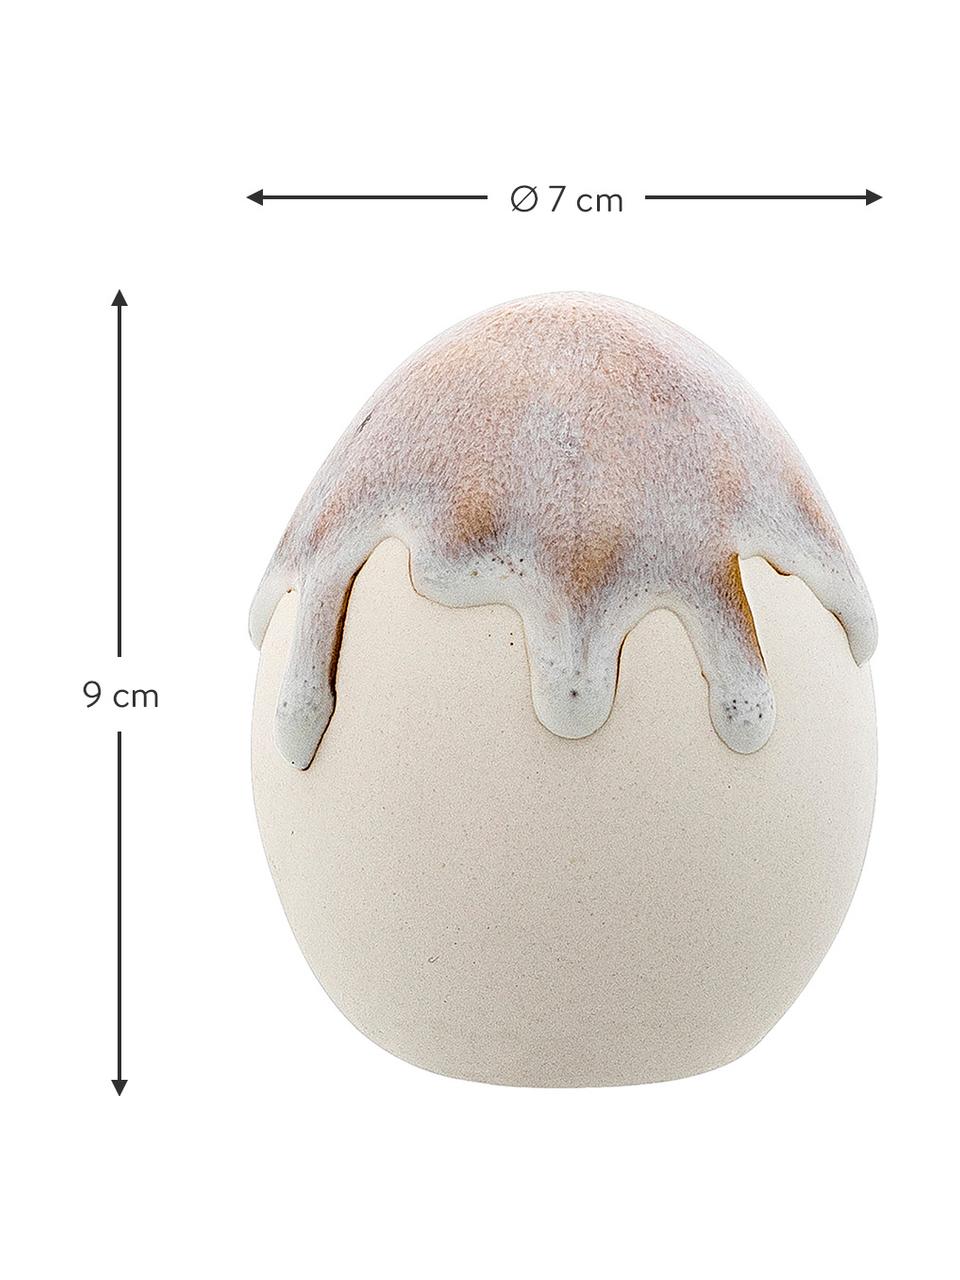 Dekorativní vajíčko Drop, Porcelán, Šedá, bílá, odstíny hnědé, Ø 7 cm, V 9 cm